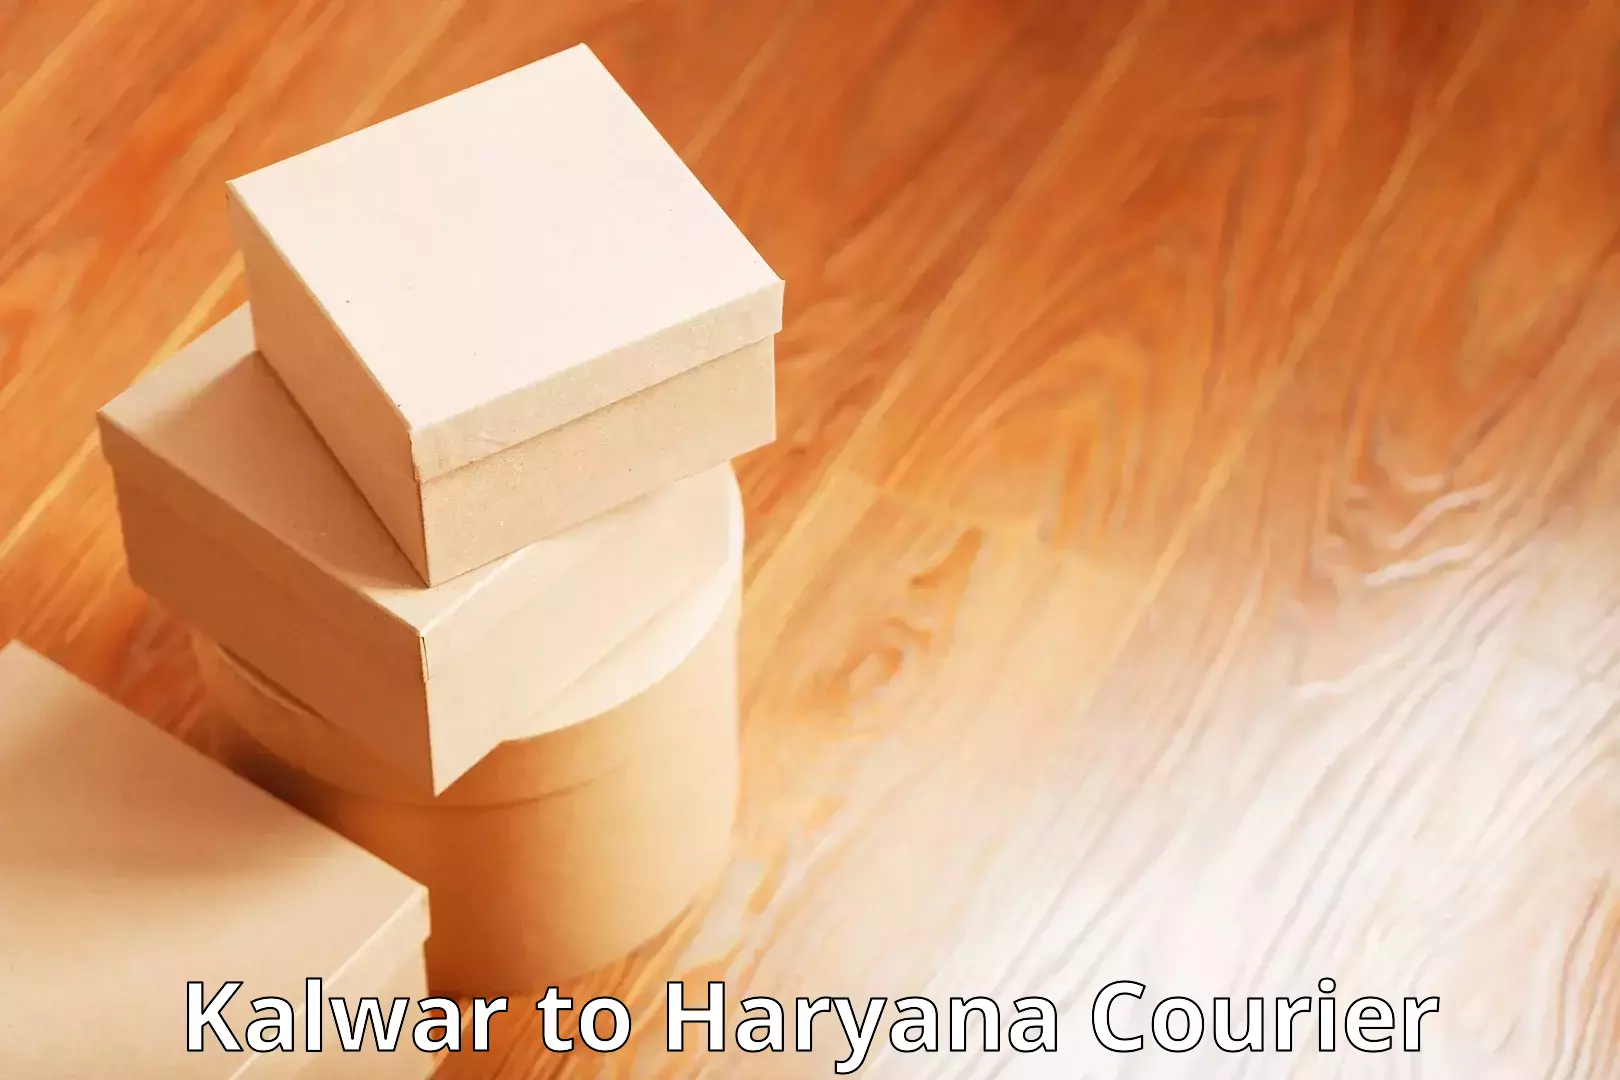 Discounted shipping Kalwar to NCR Haryana